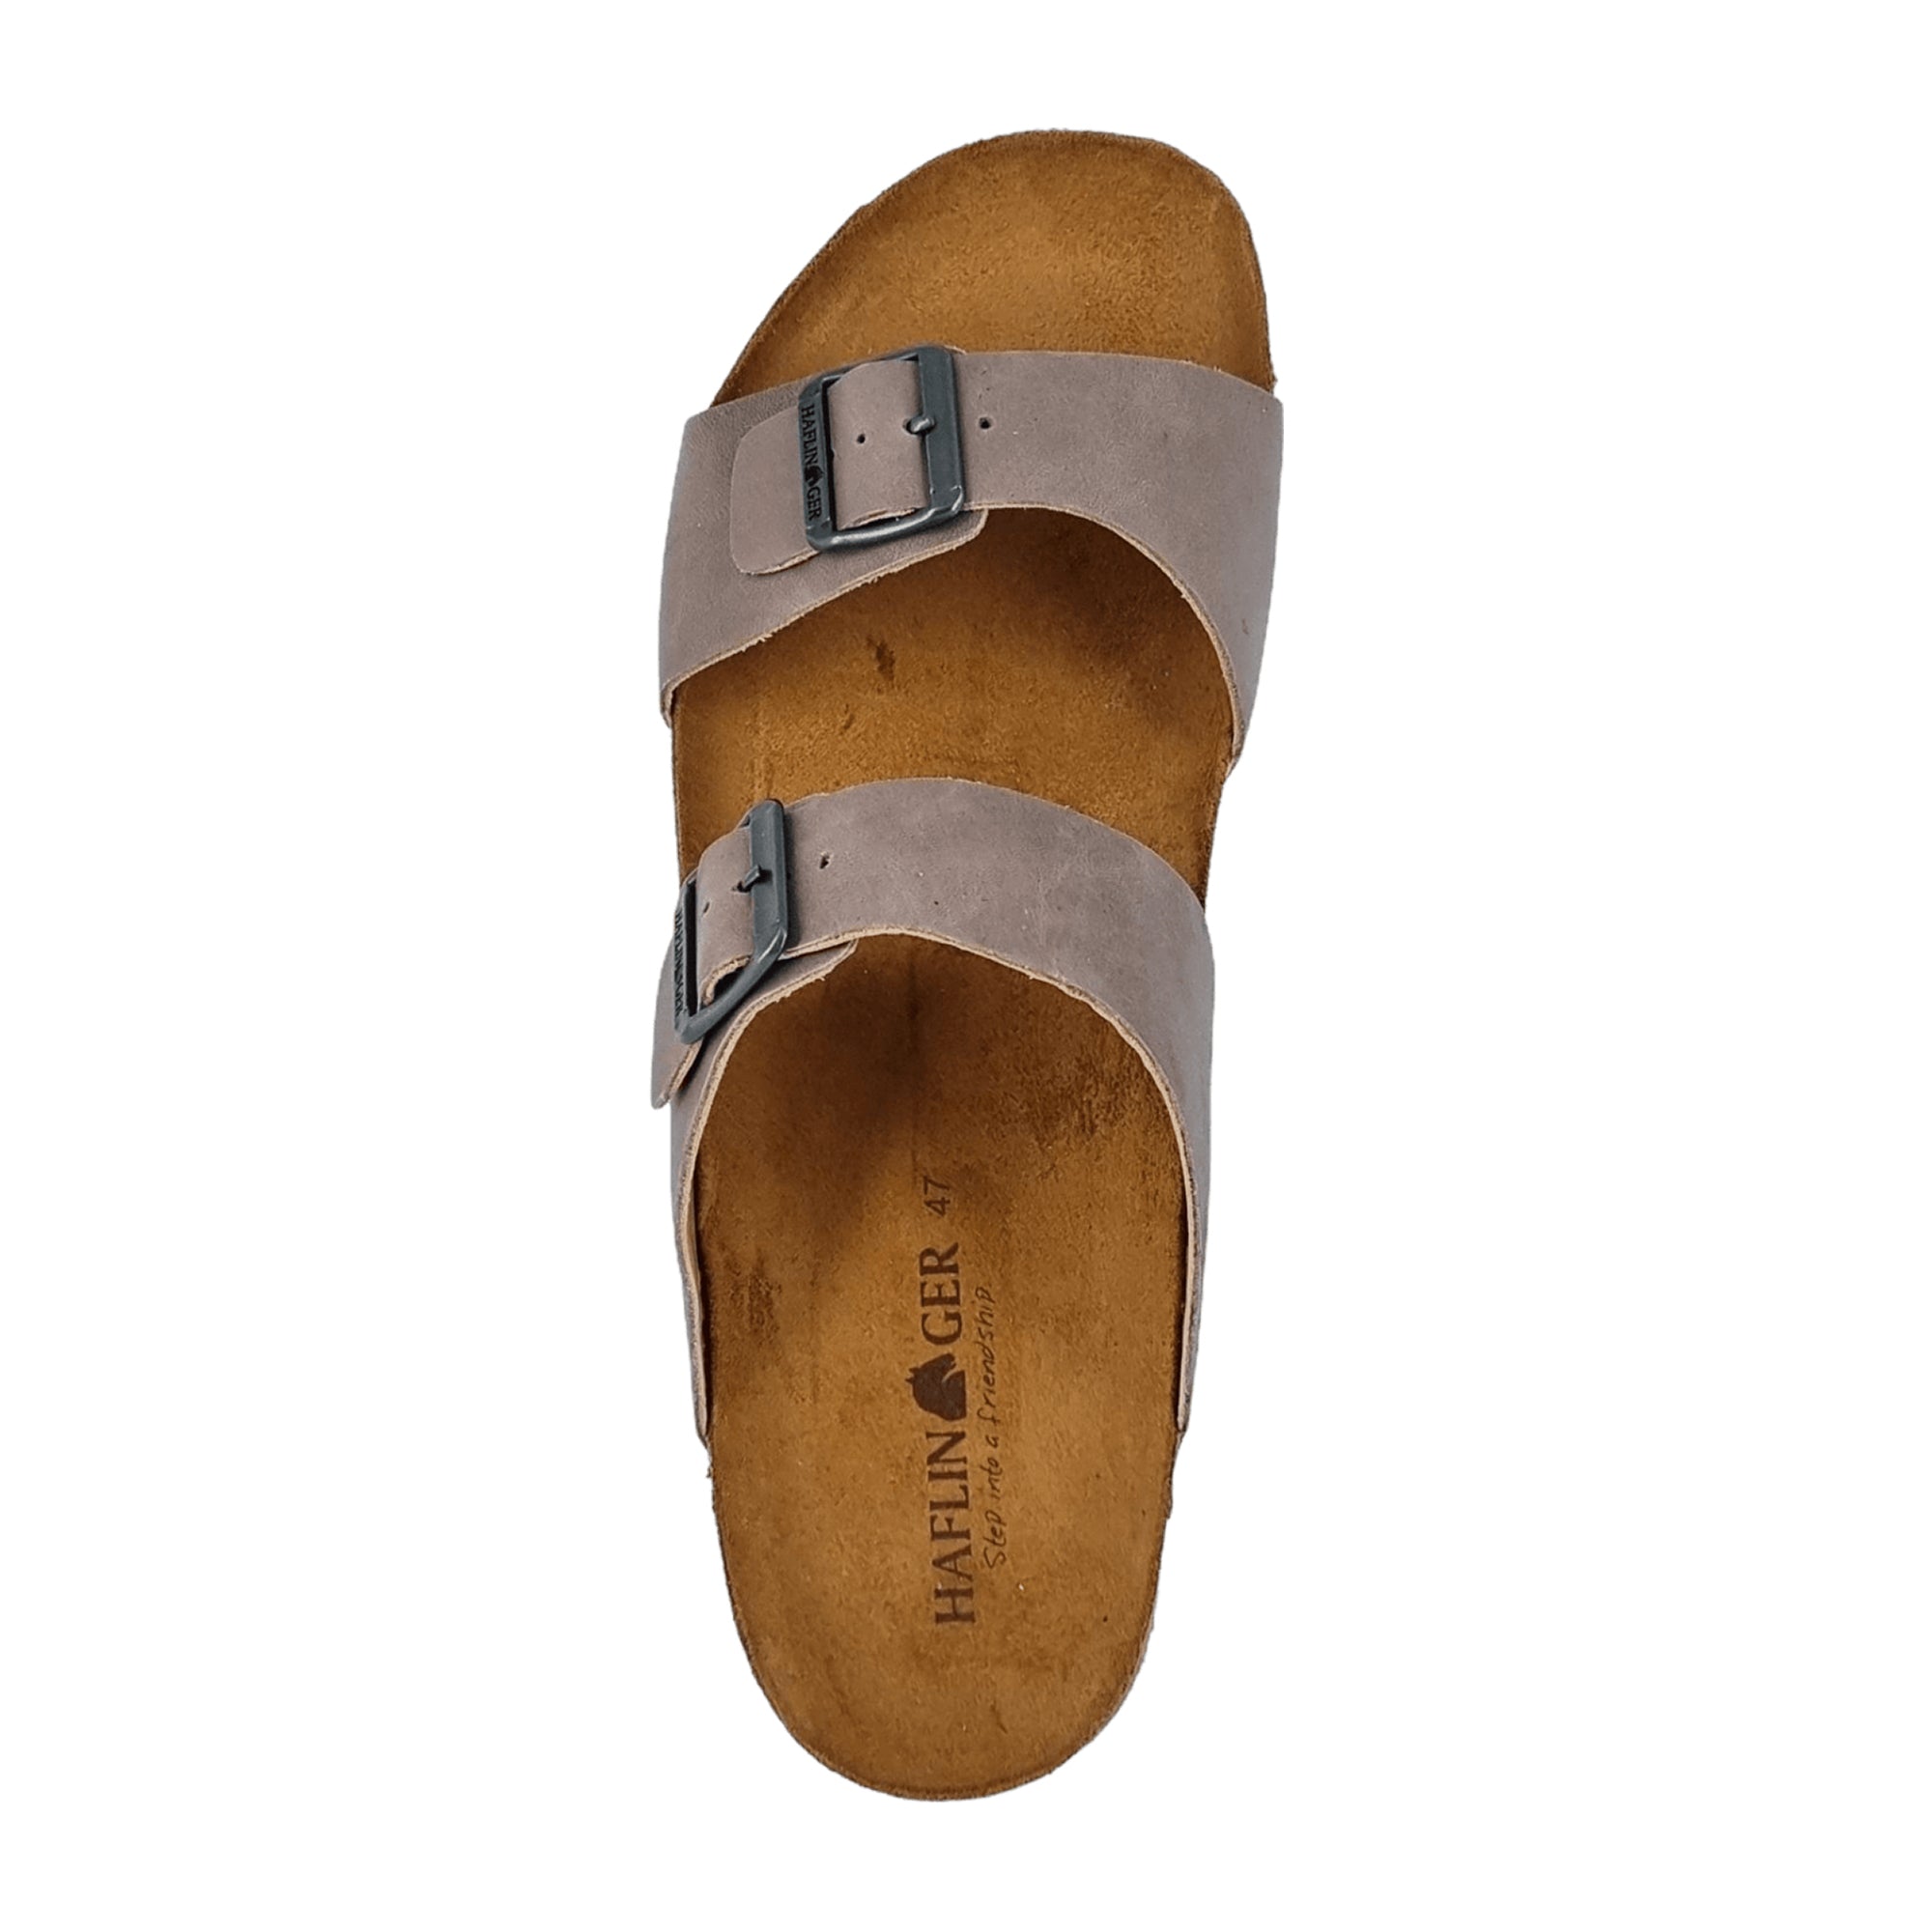 Haflinger Bio Andrea Men's Sustainable Sandals, Grey